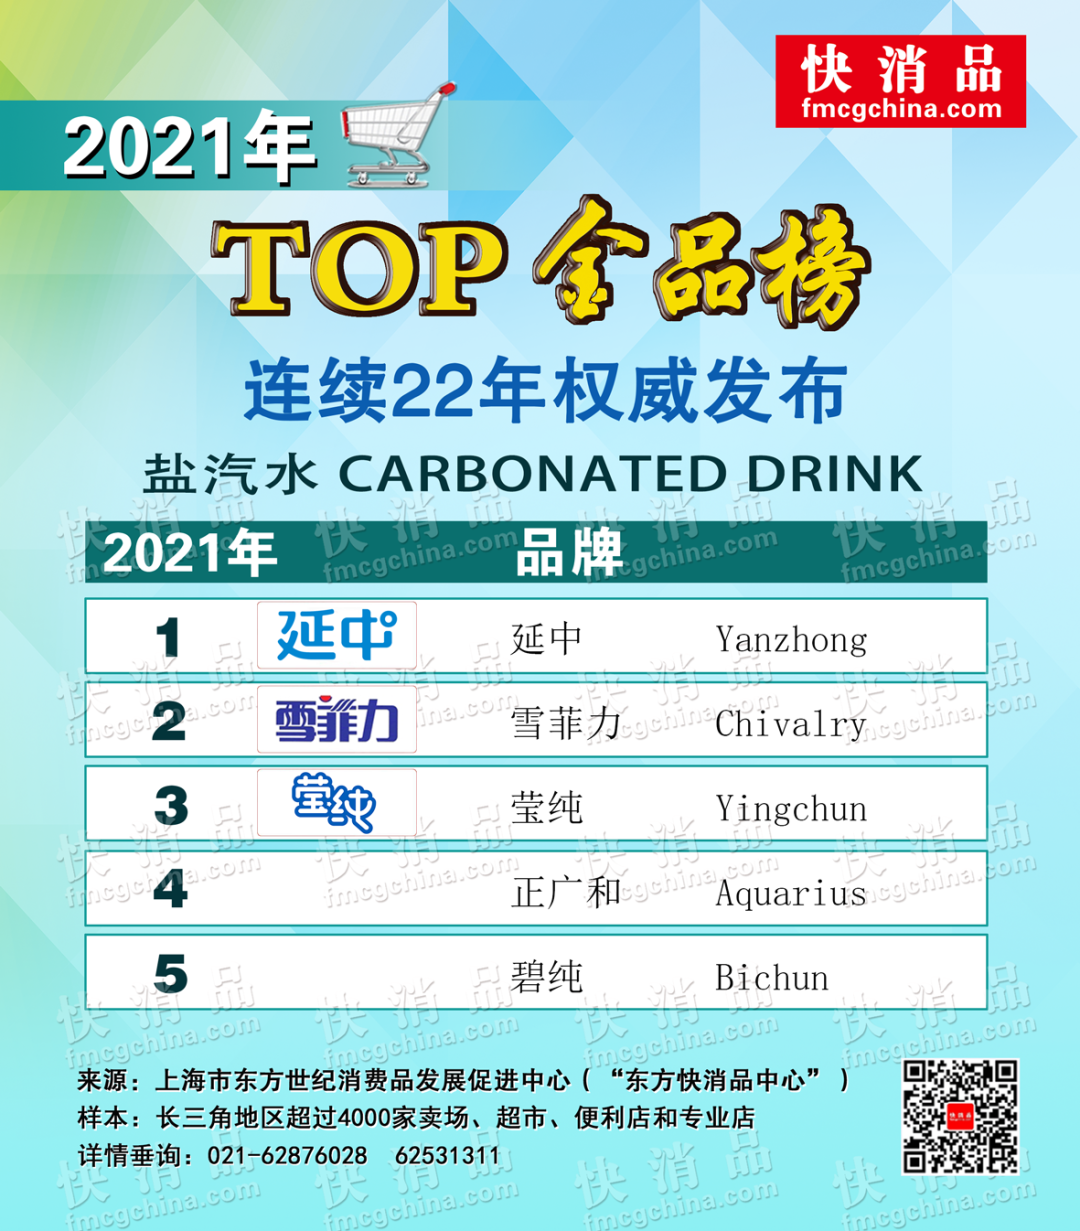 上海雪菲力盐汽水(「独家」“2021饮品TOP金品榜（之二）”)